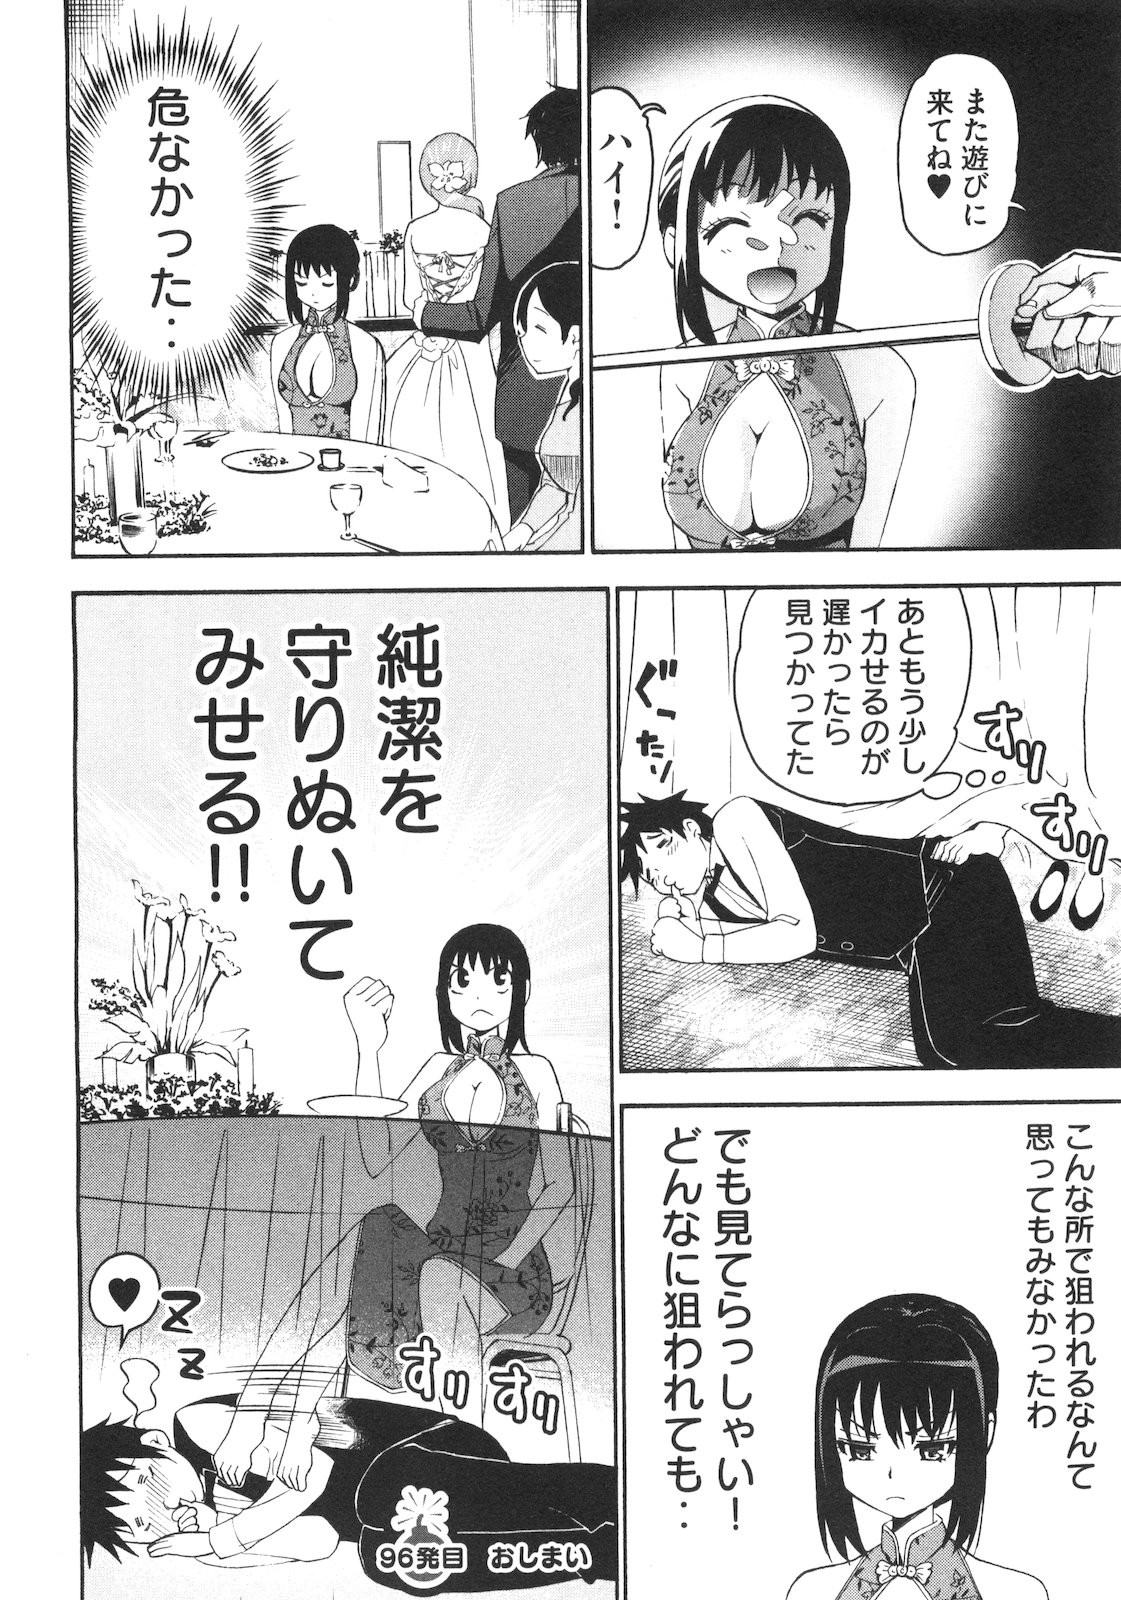 [Torikawa Sora] Bousou Shojo Vol.9 [酉川宇宙] 暴想処女 第9巻